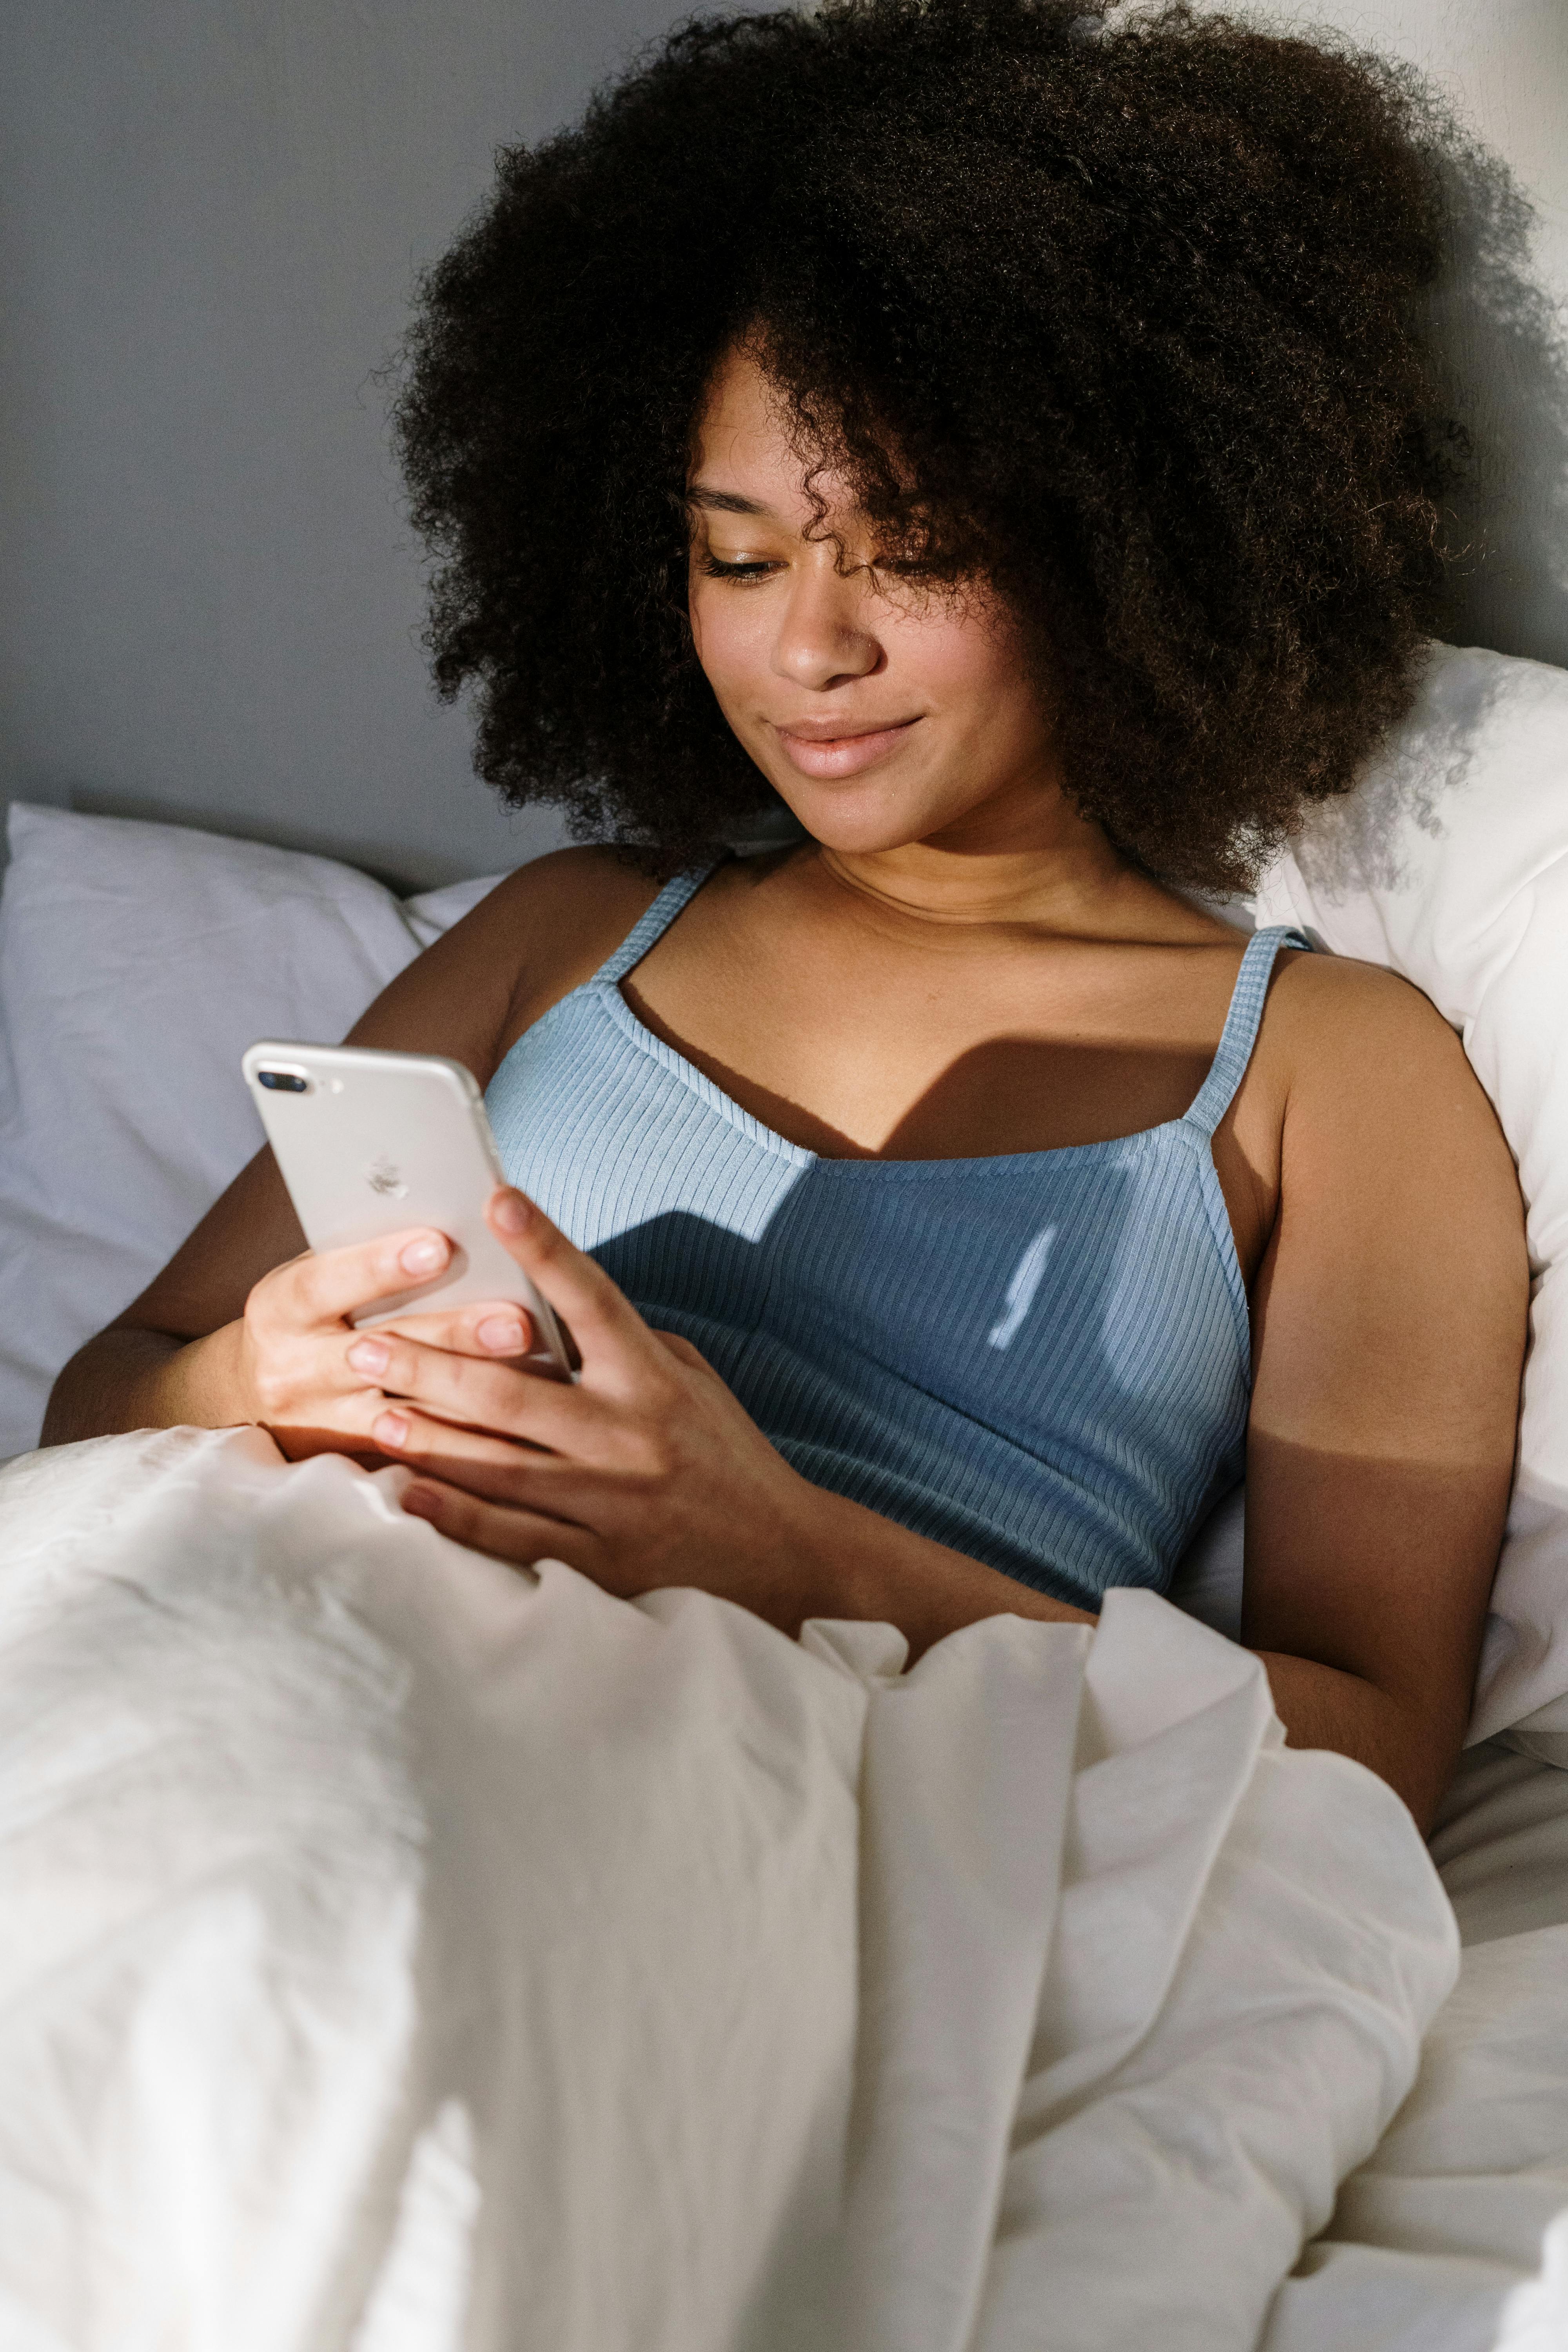 Une femme qui sourit en regardant son téléphone au lit | Source : Pexels